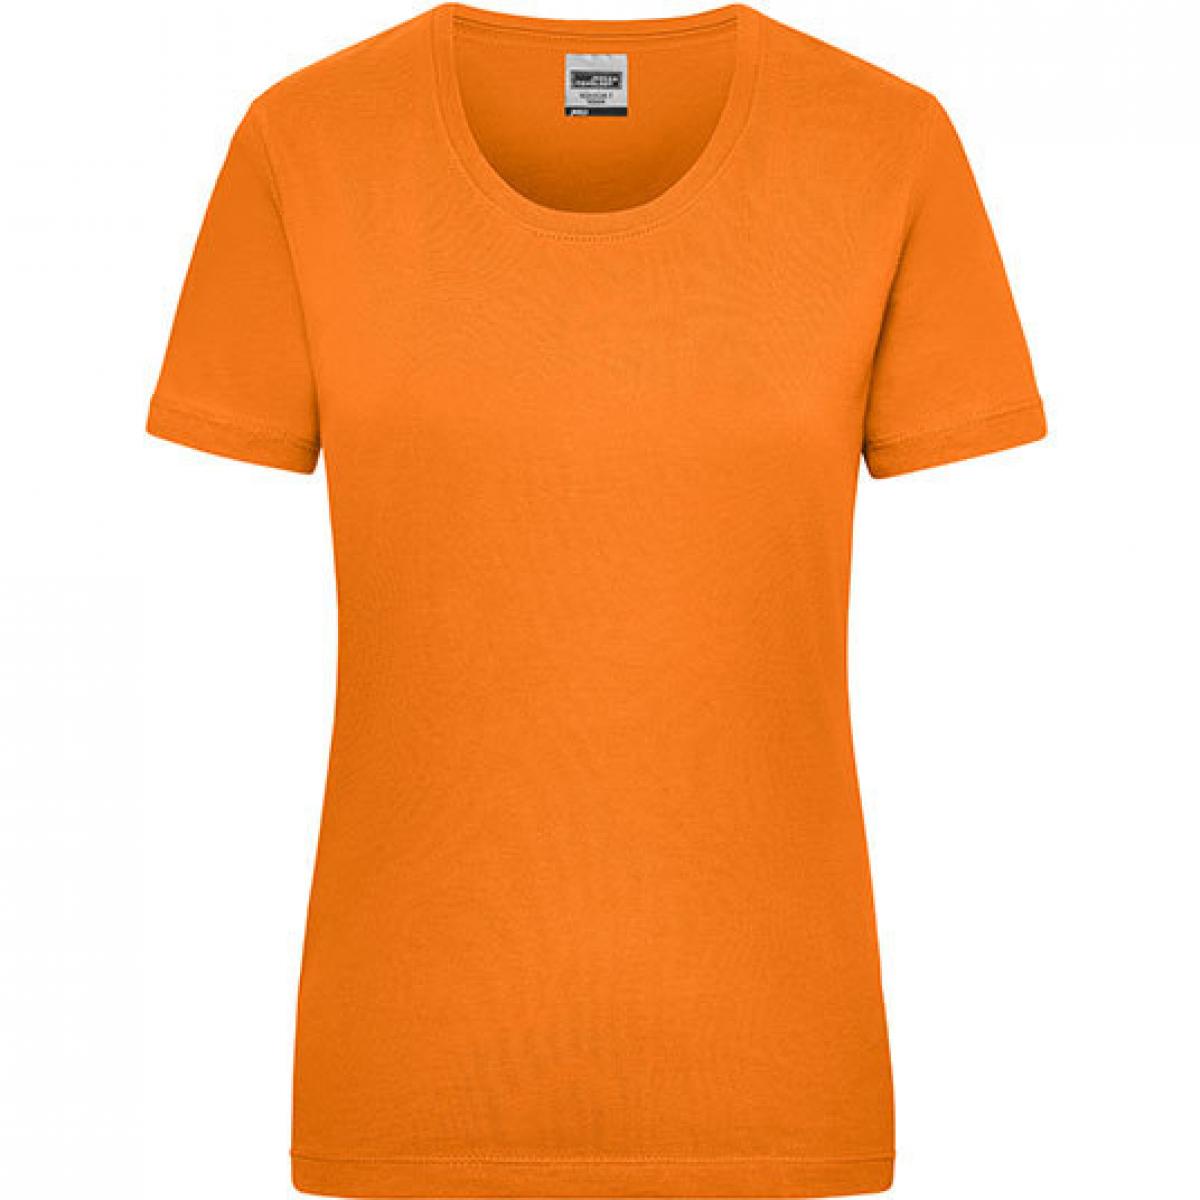 Hersteller: James+Nicholson Herstellernummer: JN 802 Artikelbezeichnung: Workwear-T Women Damen T-Shirt Farbe: Orange